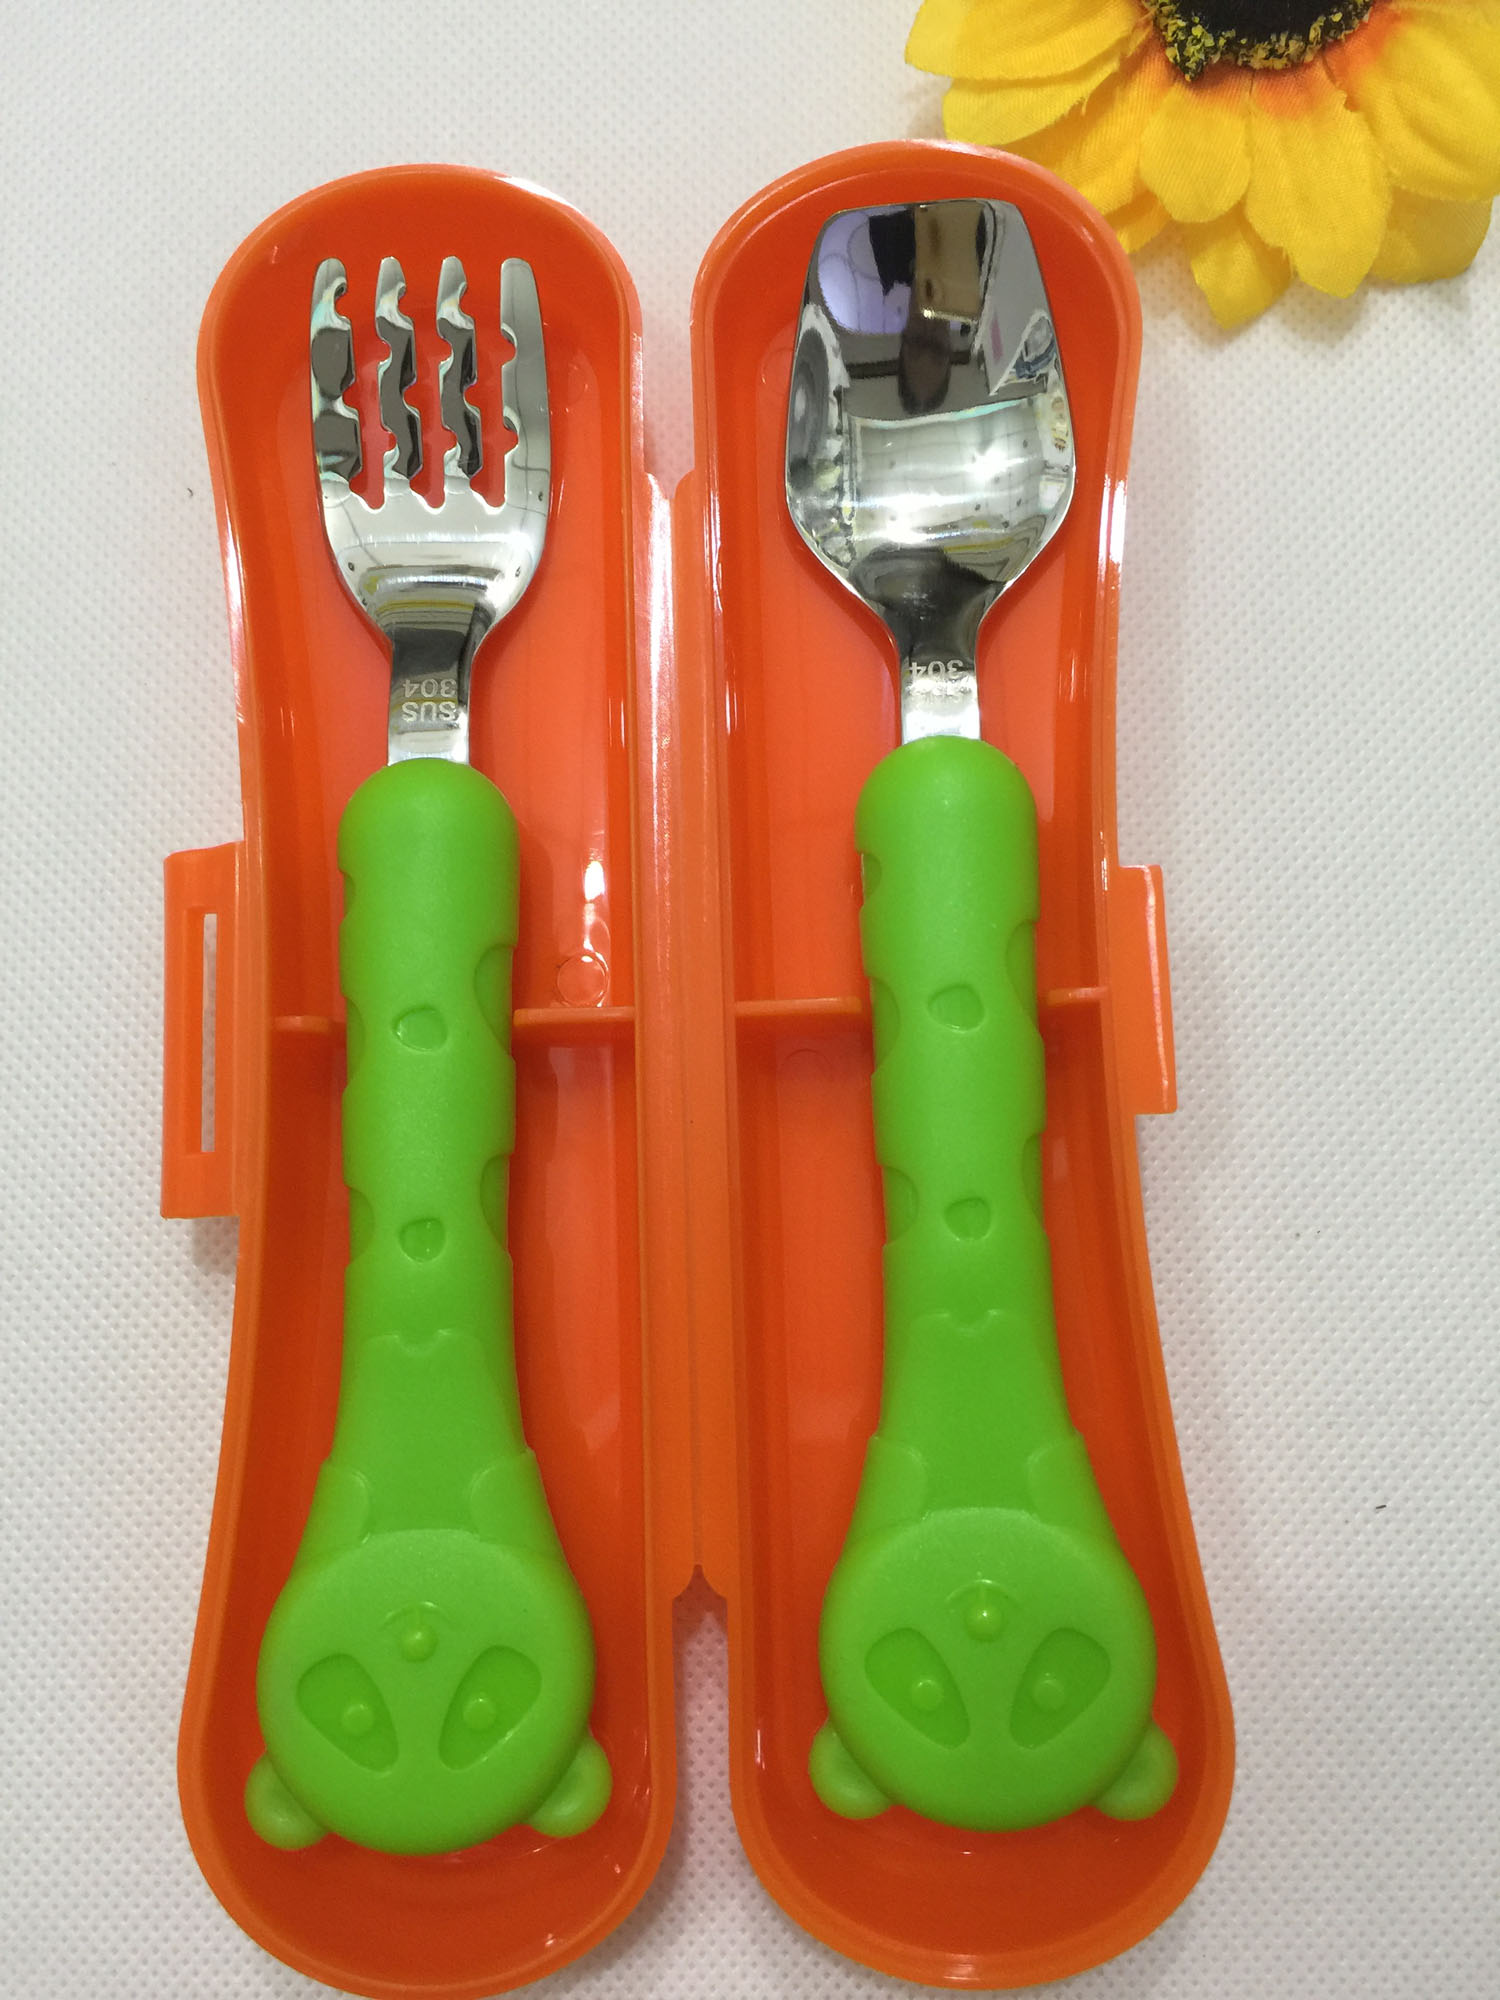 邦比乐儿婴童餐具套装 勺子+叉子+便携盒 304不锈钢材质 全家适应